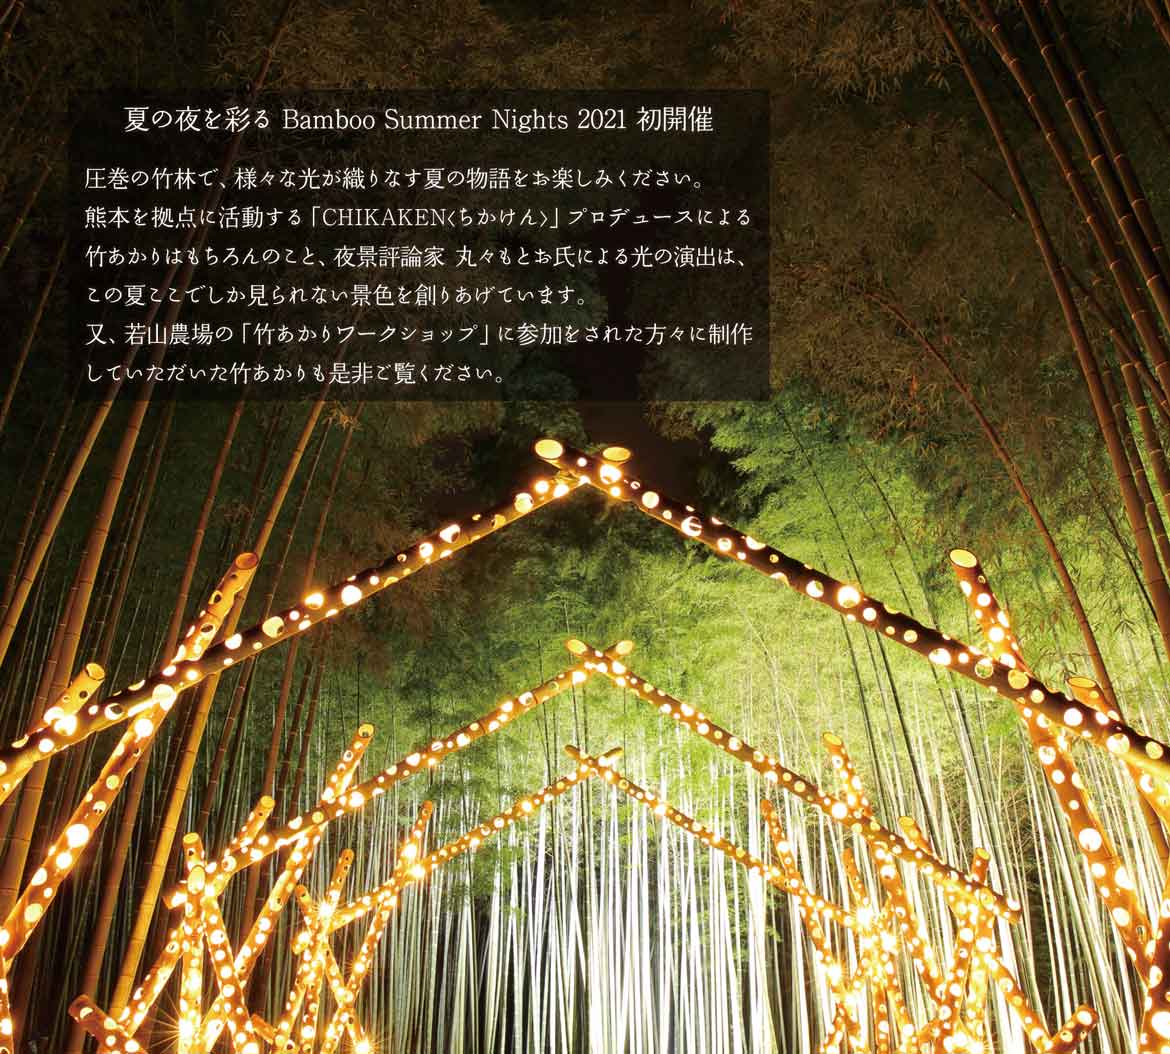 宇都宮市、若竹の杜 若山農場で夏季限定ライトアップ「Bamboo Summer Nights 2021」を開催！